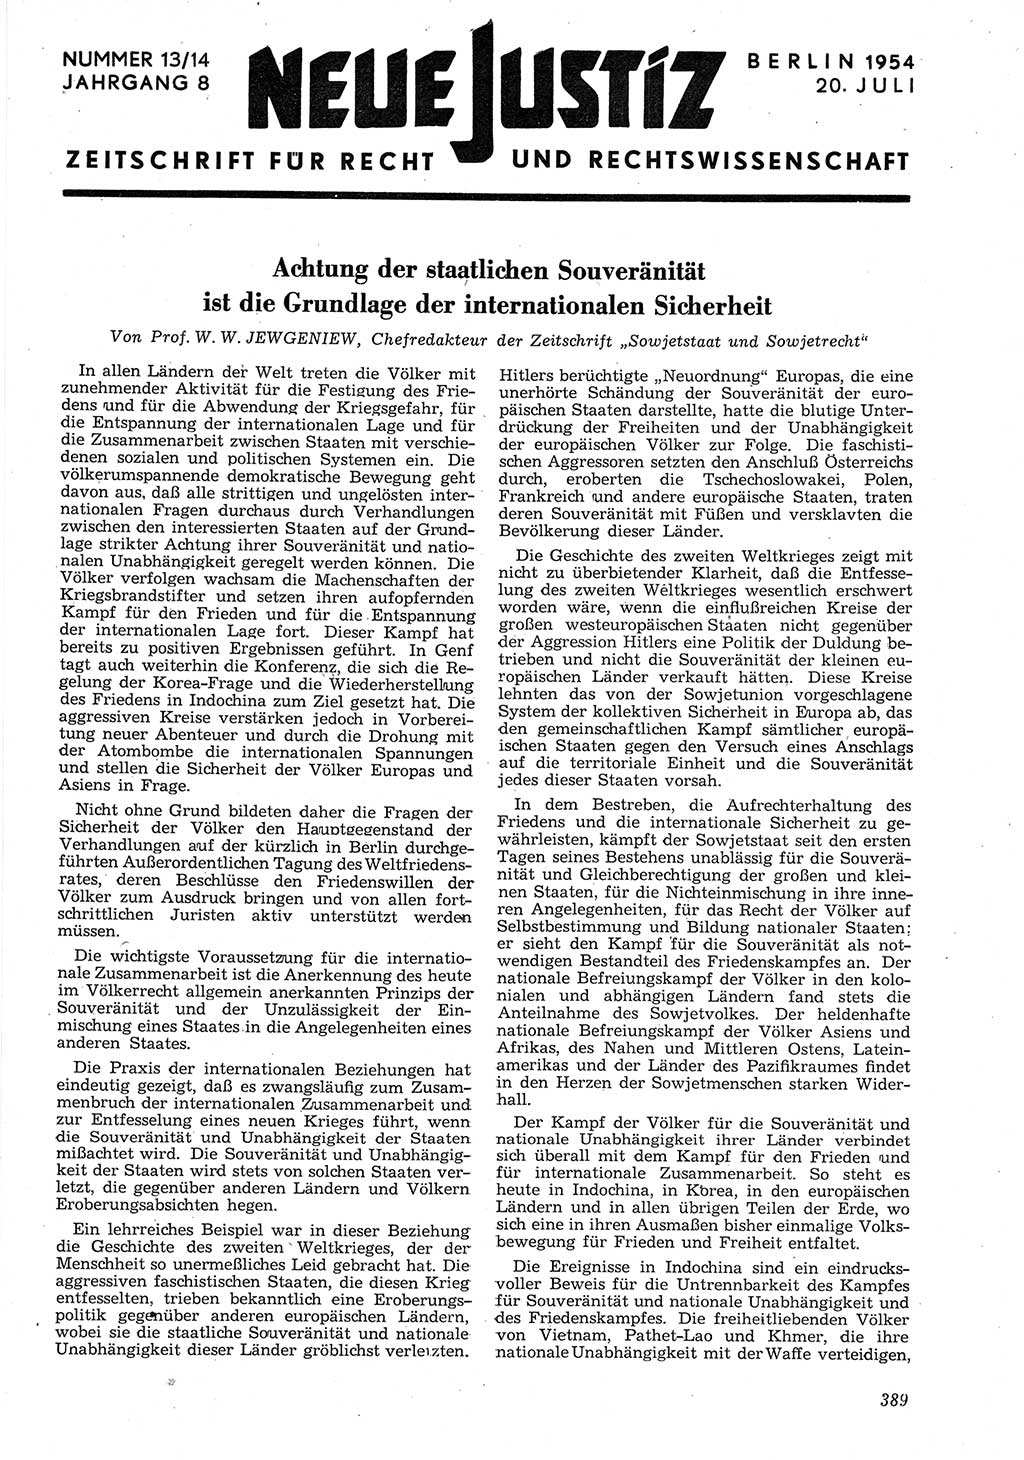 Neue Justiz (NJ), Zeitschrift für Recht und Rechtswissenschaft [Deutsche Demokratische Republik (DDR)], 8. Jahrgang 1954, Seite 389 (NJ DDR 1954, S. 389)